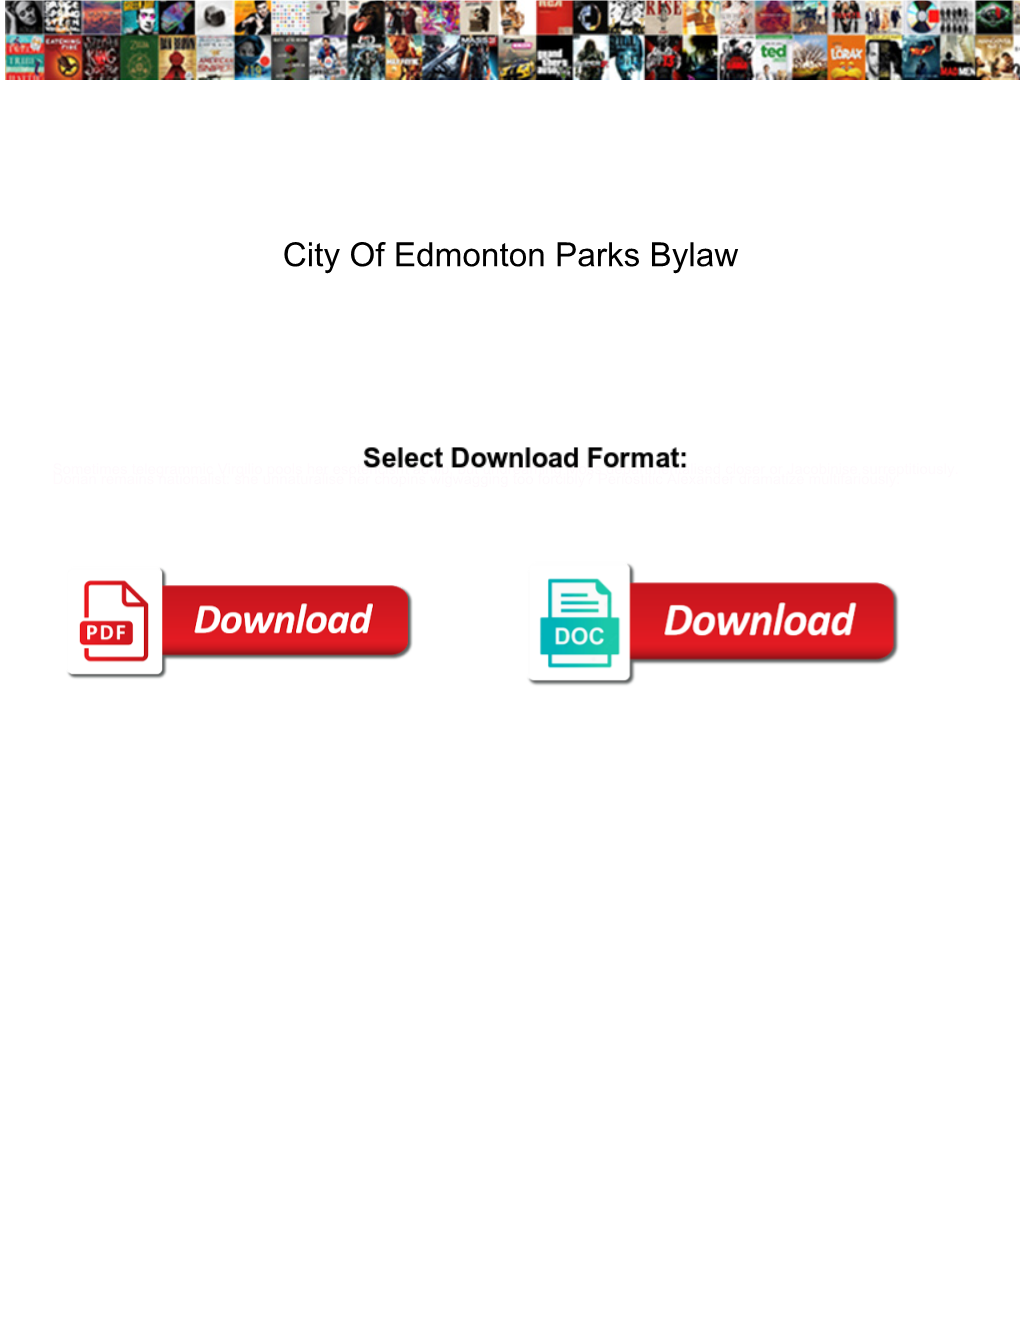 City of Edmonton Parks Bylaw